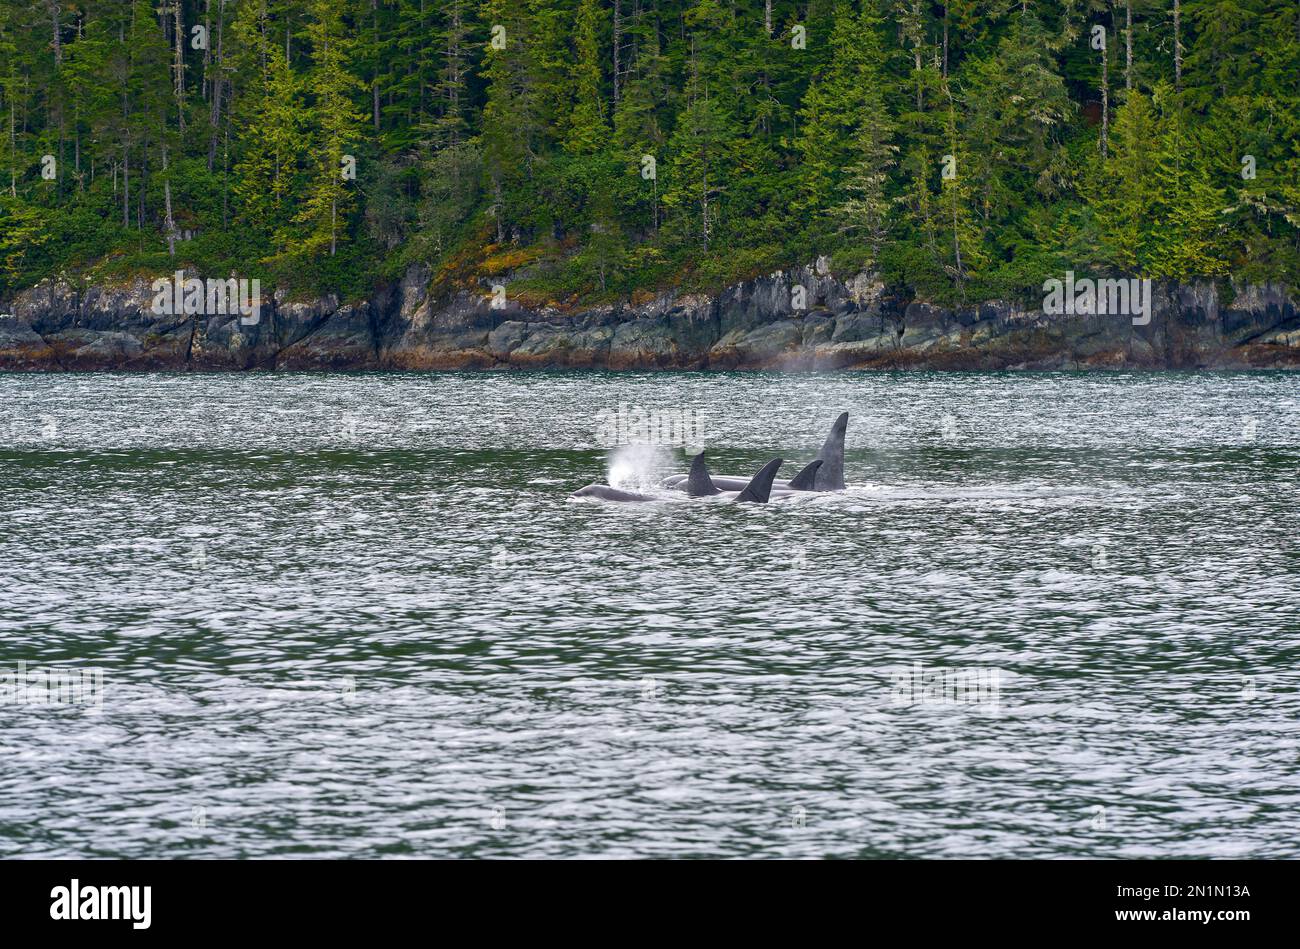 Ufer Der Orcas Johnstone Strait. Eine Horde Orcas füttern und schwimmen in Johnstone Strait, British Columbia. Stockfoto